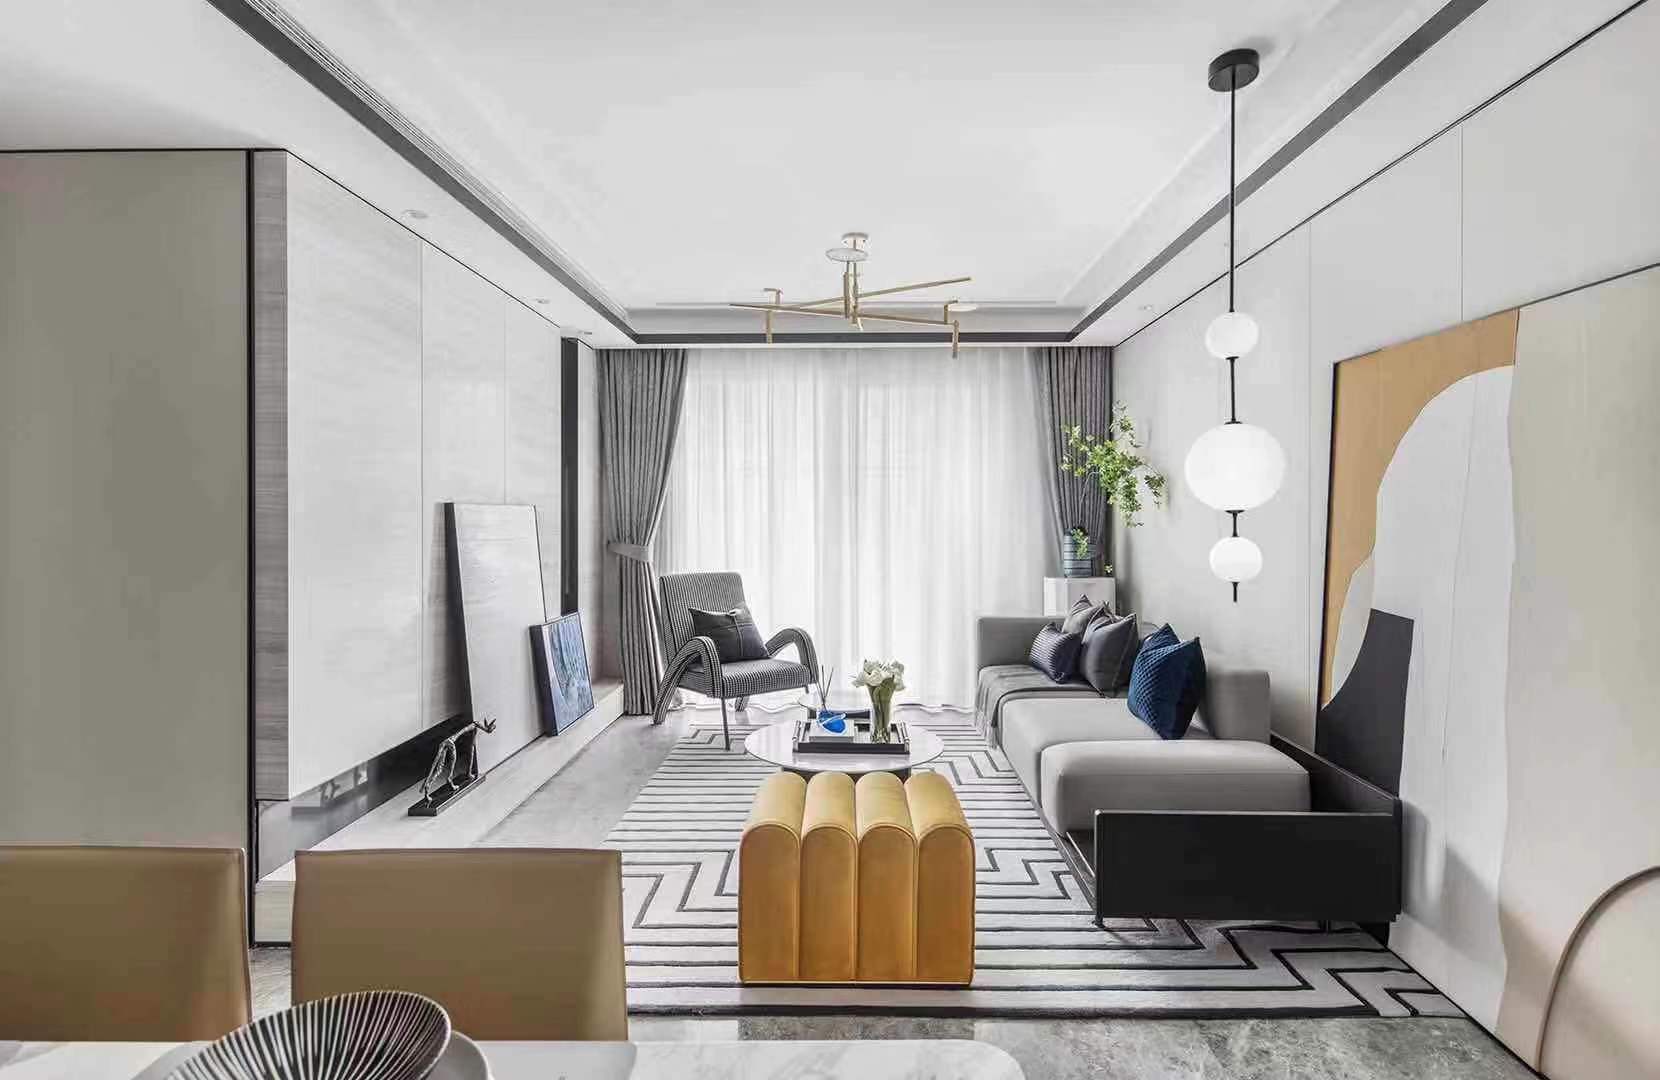  95户型以黄蓝色为主要跳色，首先来到作为主要公共空间的客厅区域。客厅的打造“心意”十足，珊瑚红沙发在经典优雅的廓形中注入了跳跃的色彩，仿佛诉说着空间独一无二的个性。茶几、单人沙发、地毯等单品以黑白灰色诠释，不仅衬托出沙发的大面积跳色，完美地将空间的优雅气质烘托而出。